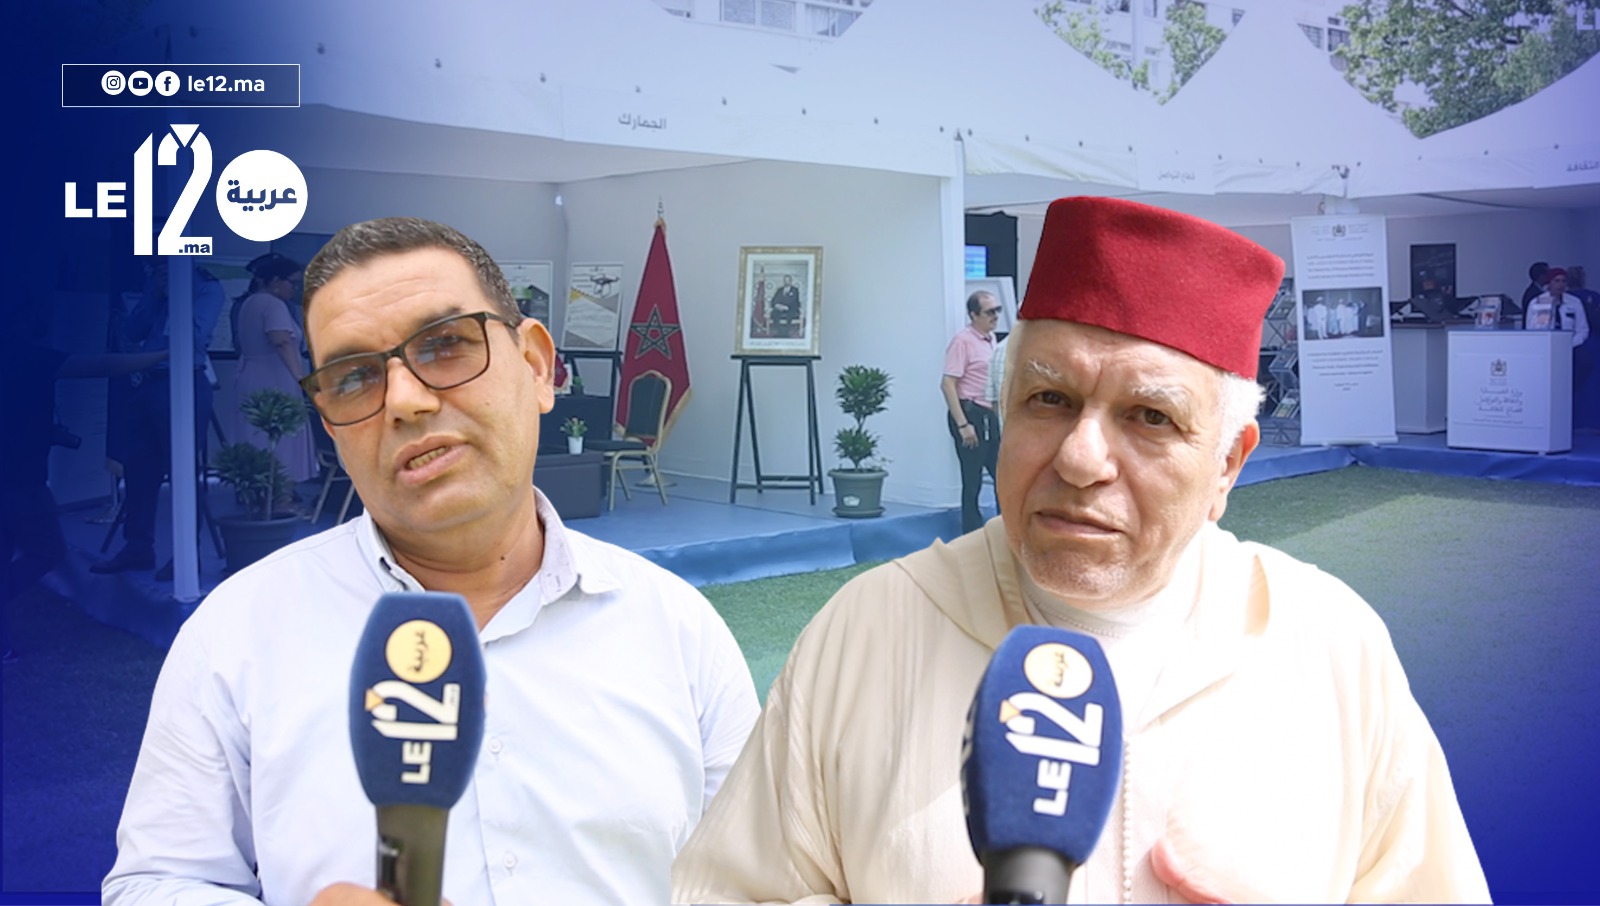 وزارتا التوفيق والمنصوري وأسئلة المهاجرين المغاربة.. هكذا يكون التواصل (فيديو)